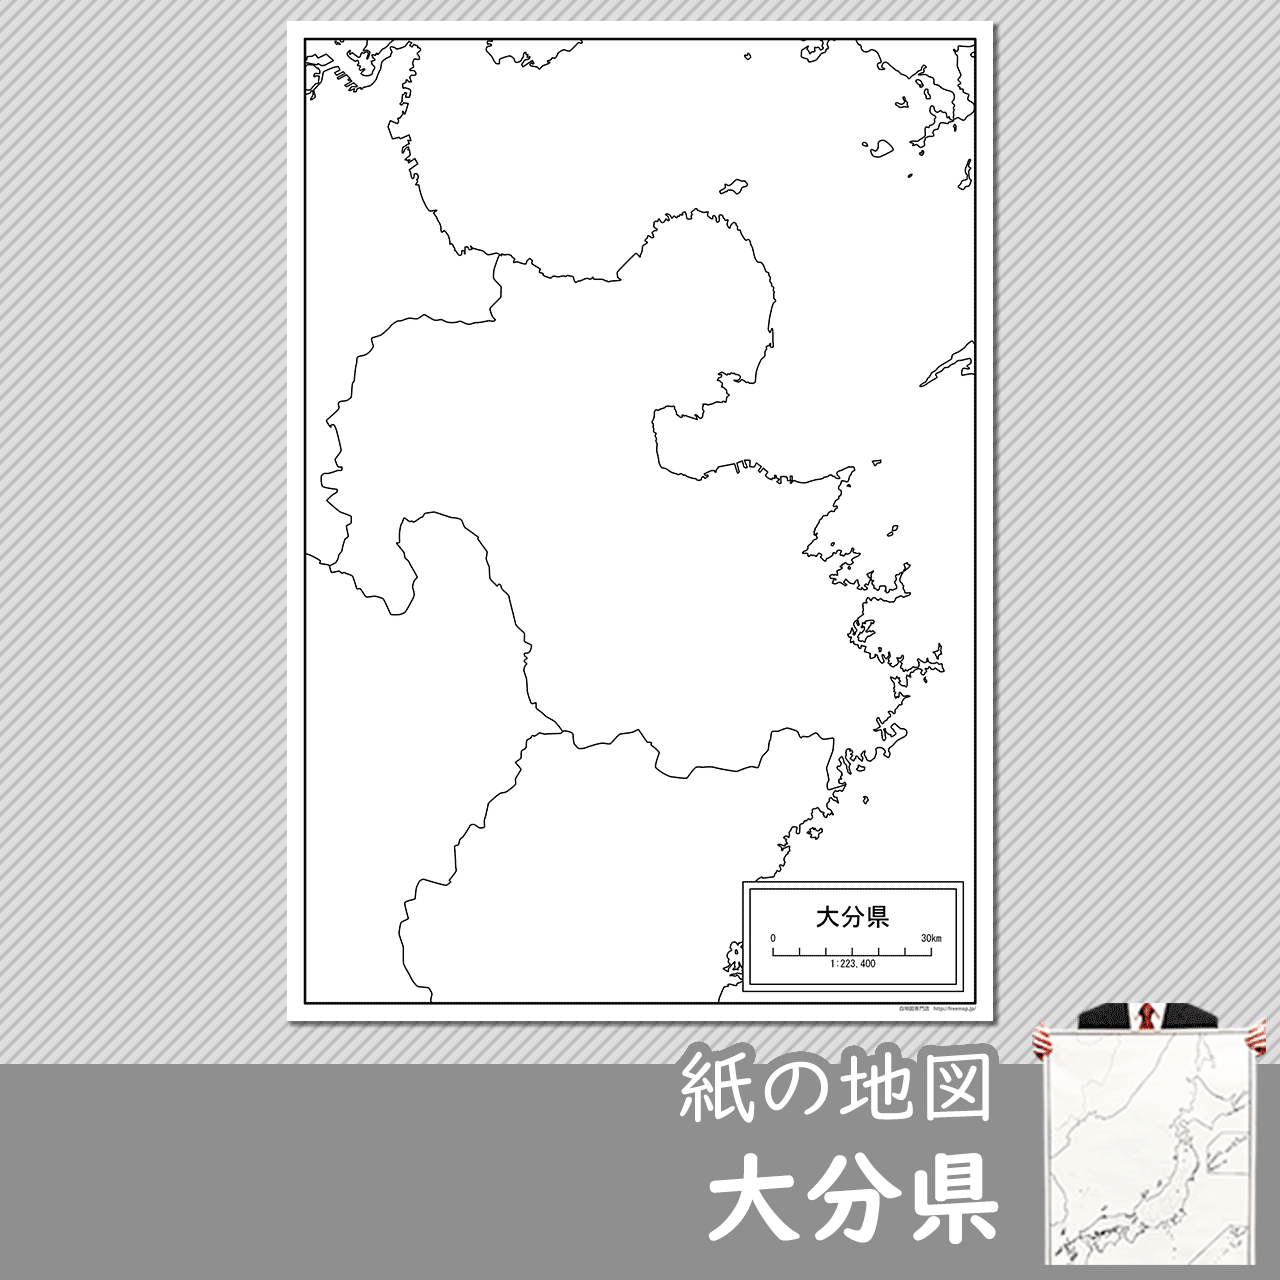 大分県の紙の白地図のサムネイル